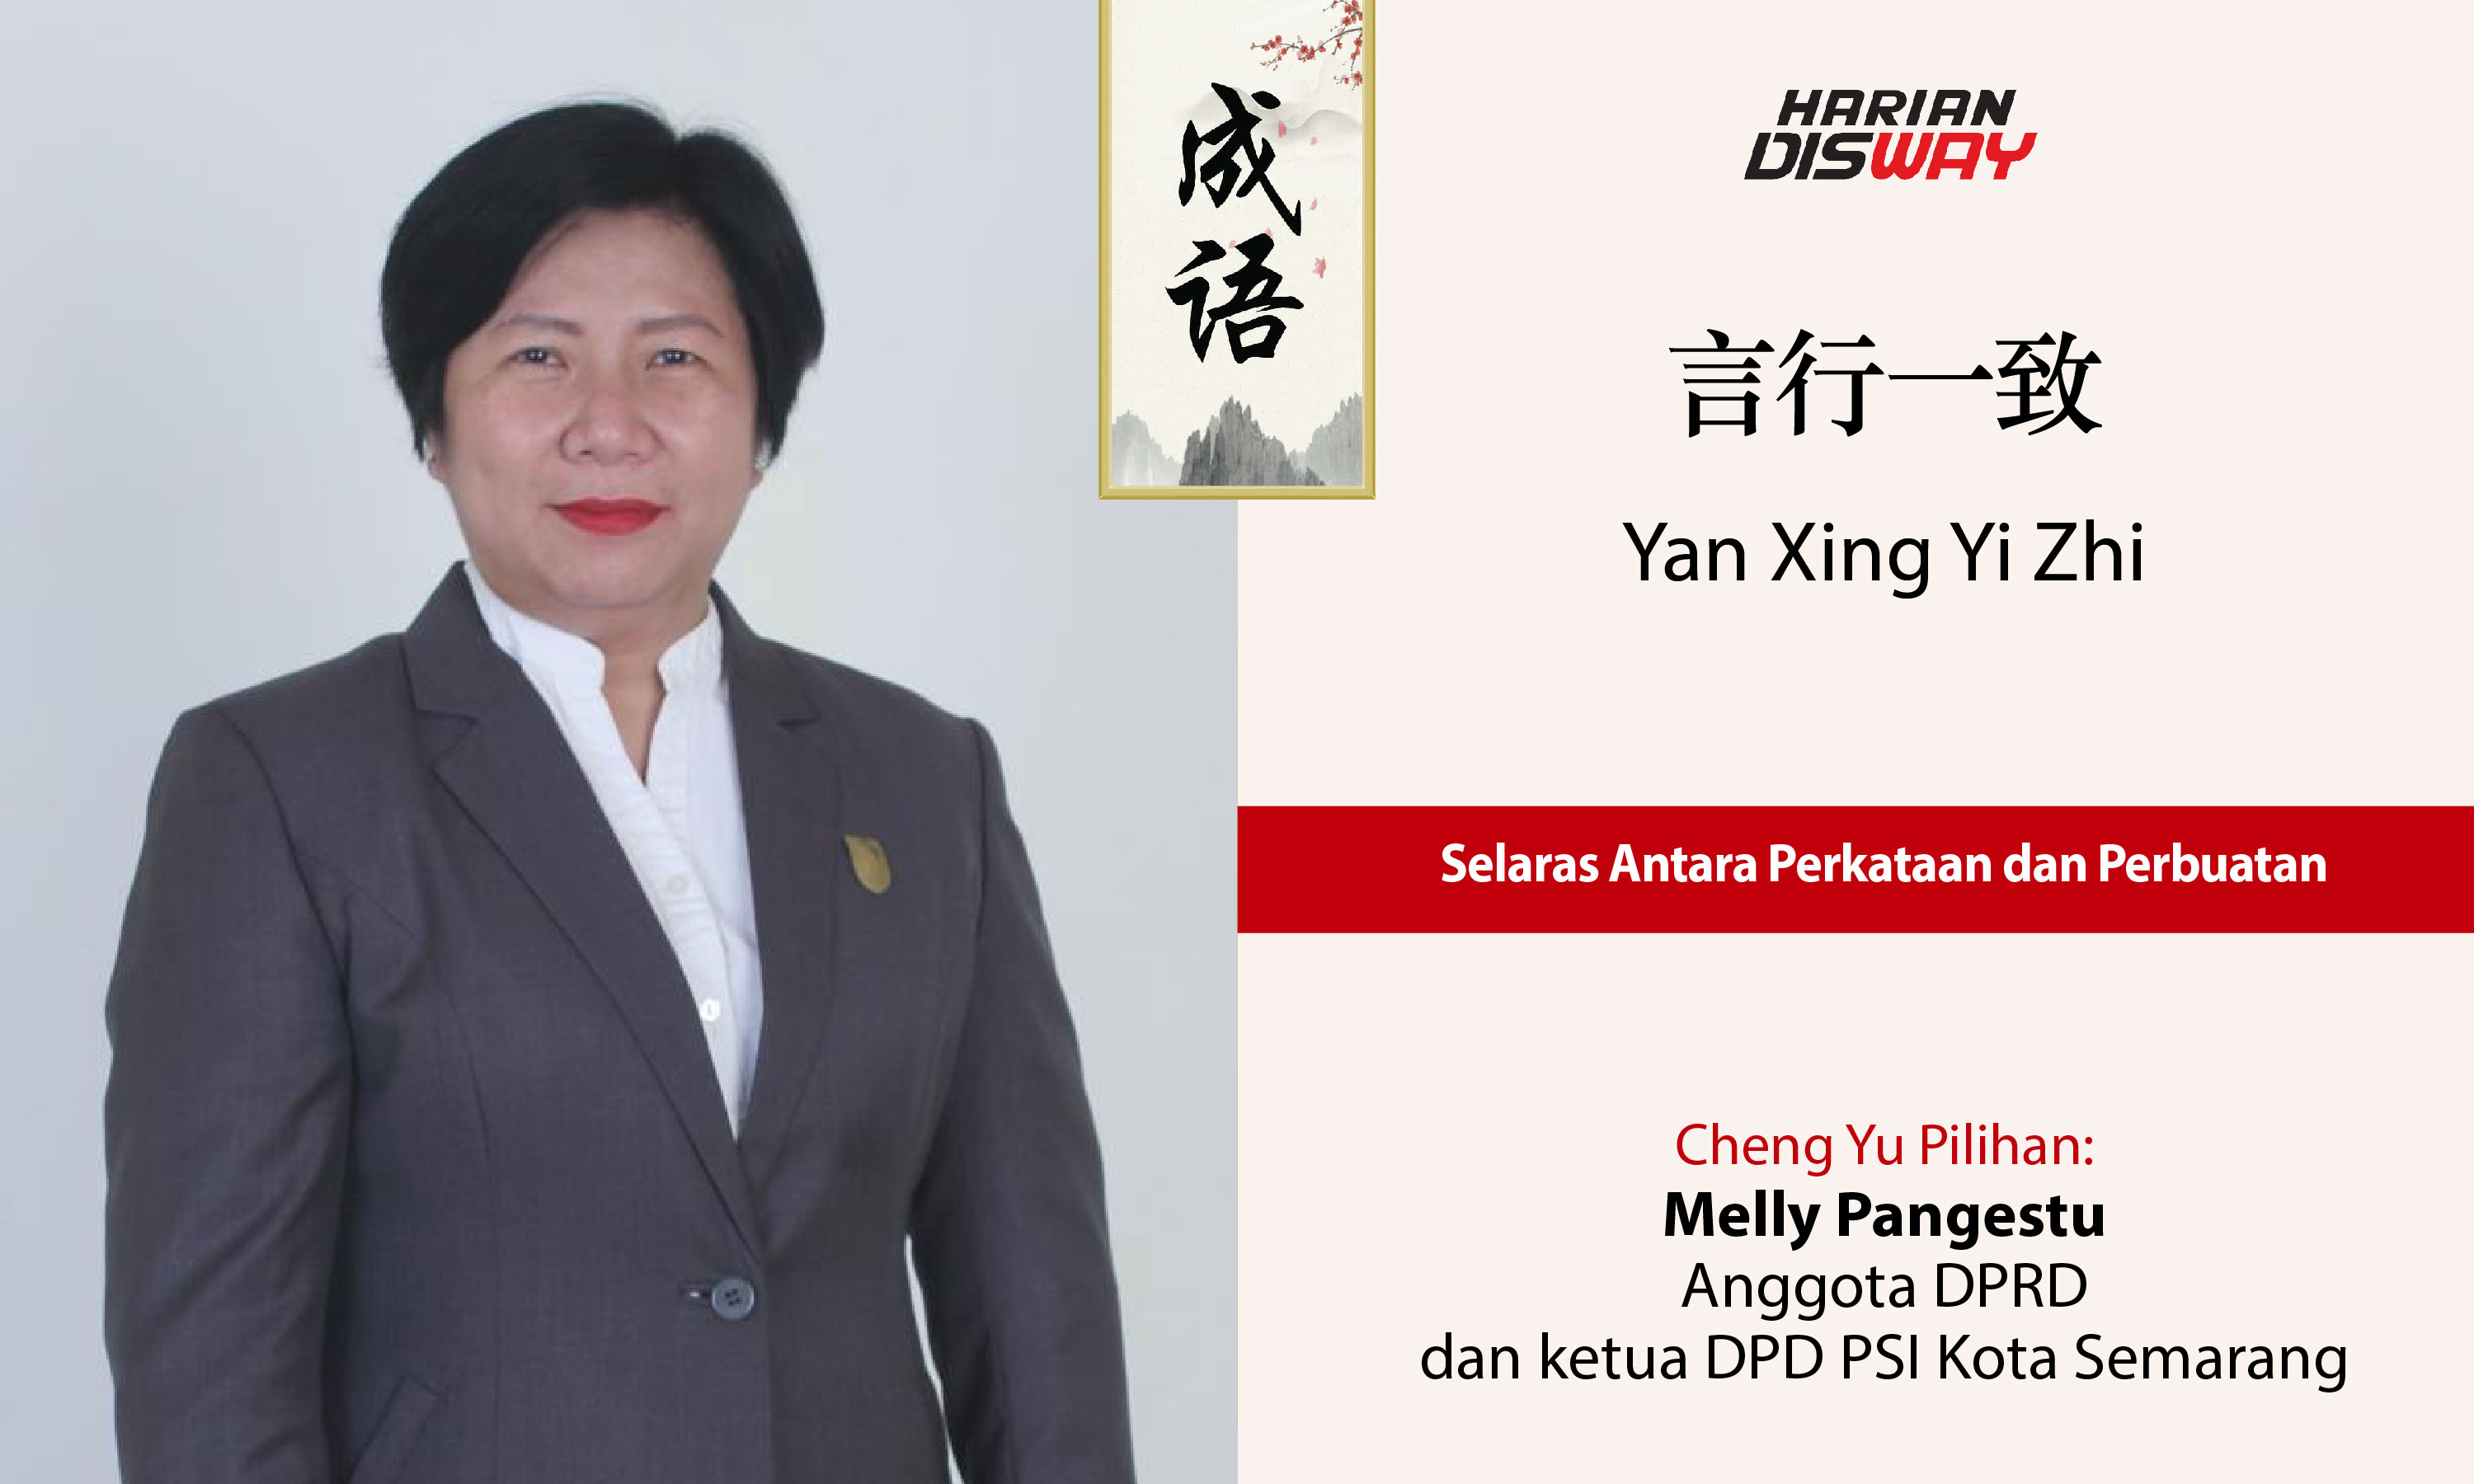 Cheng Yu Pilihan Anggota DPRD dan ketua DPD PSI Kota Semarang Melly Pangestu: Yan Xing Yi Zhi